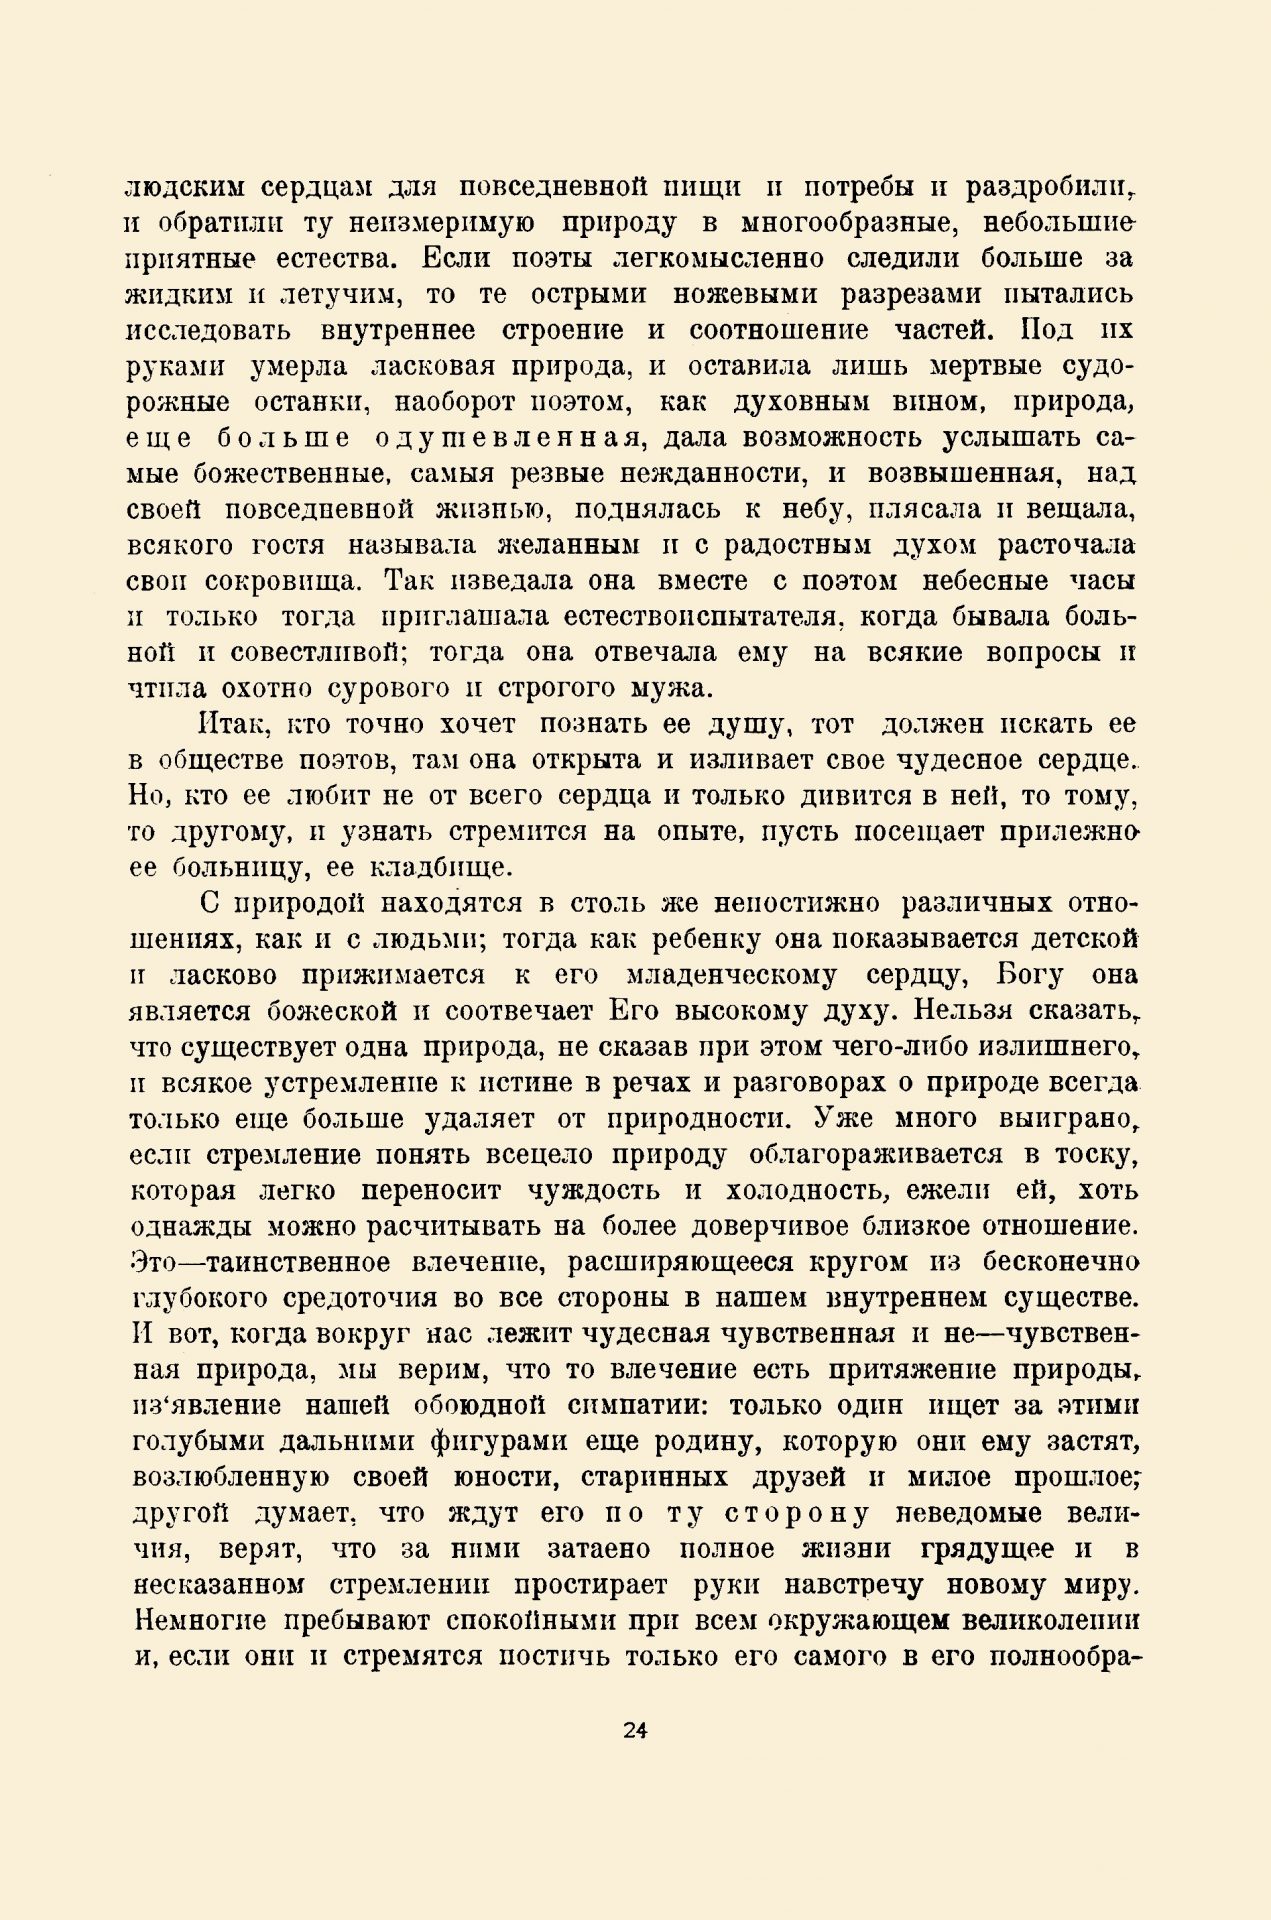 Пути творчества, 1920, № 6-7